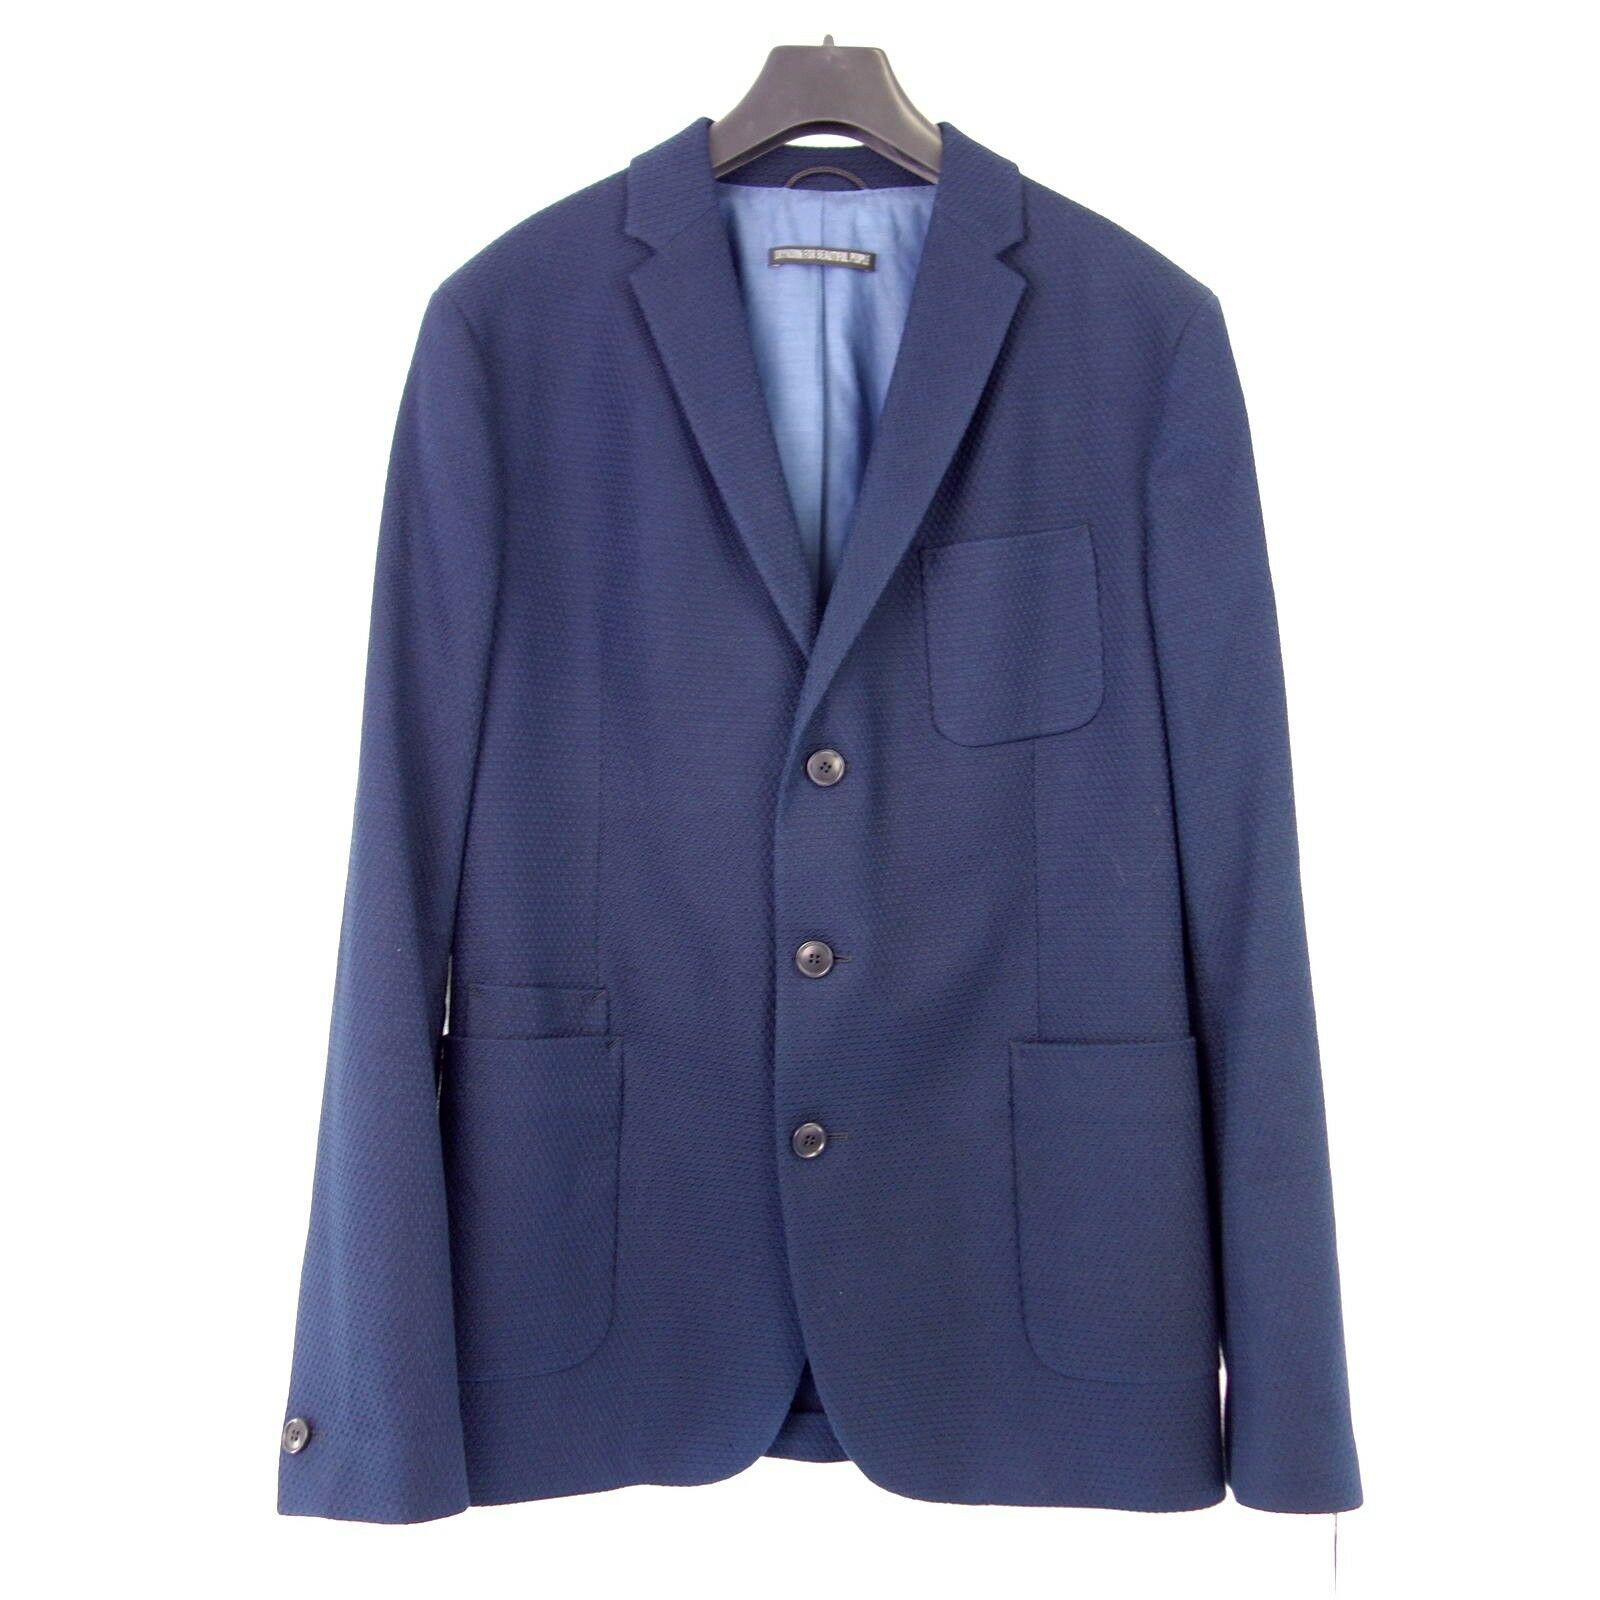 Drykorn Herren Sakko Burley Größe 50 Blau Baumwolle Jacket Einreiher Np 229 Neu - 50